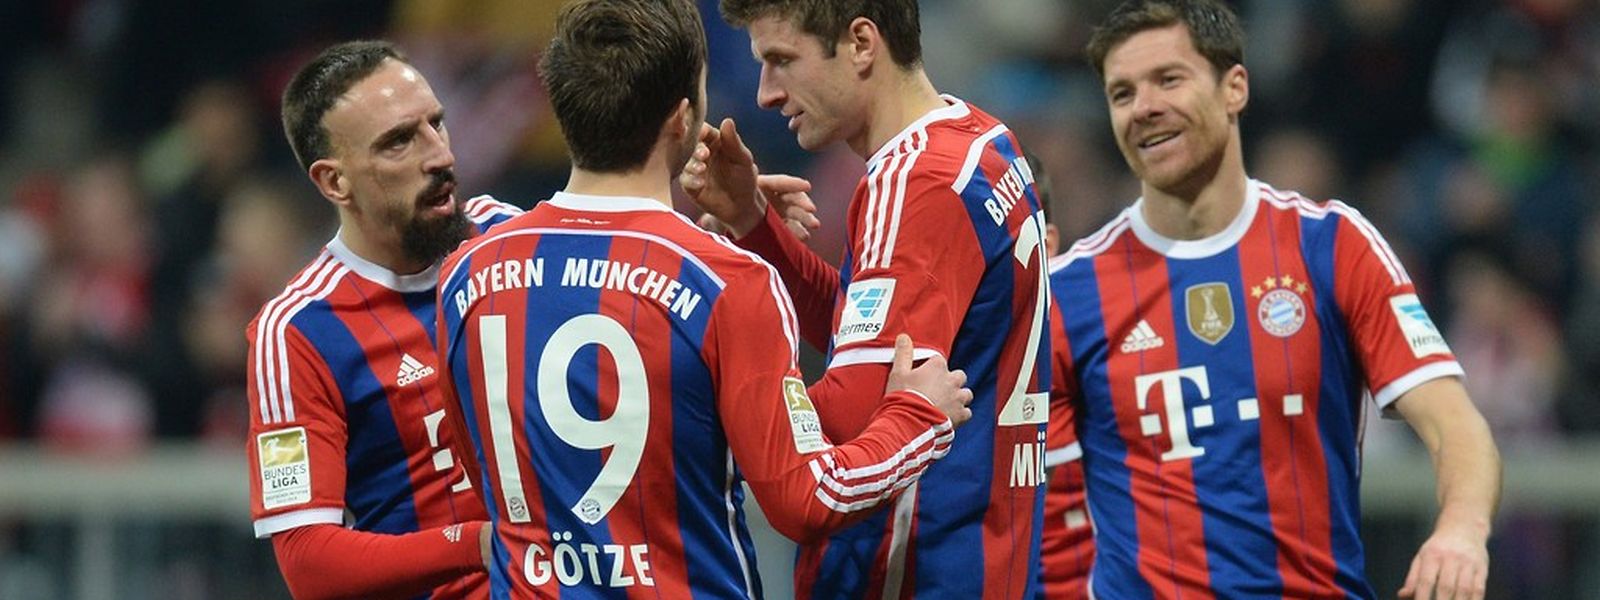 Die Bayern-Spieler konnten einen weiteren Sieg bejubeln.